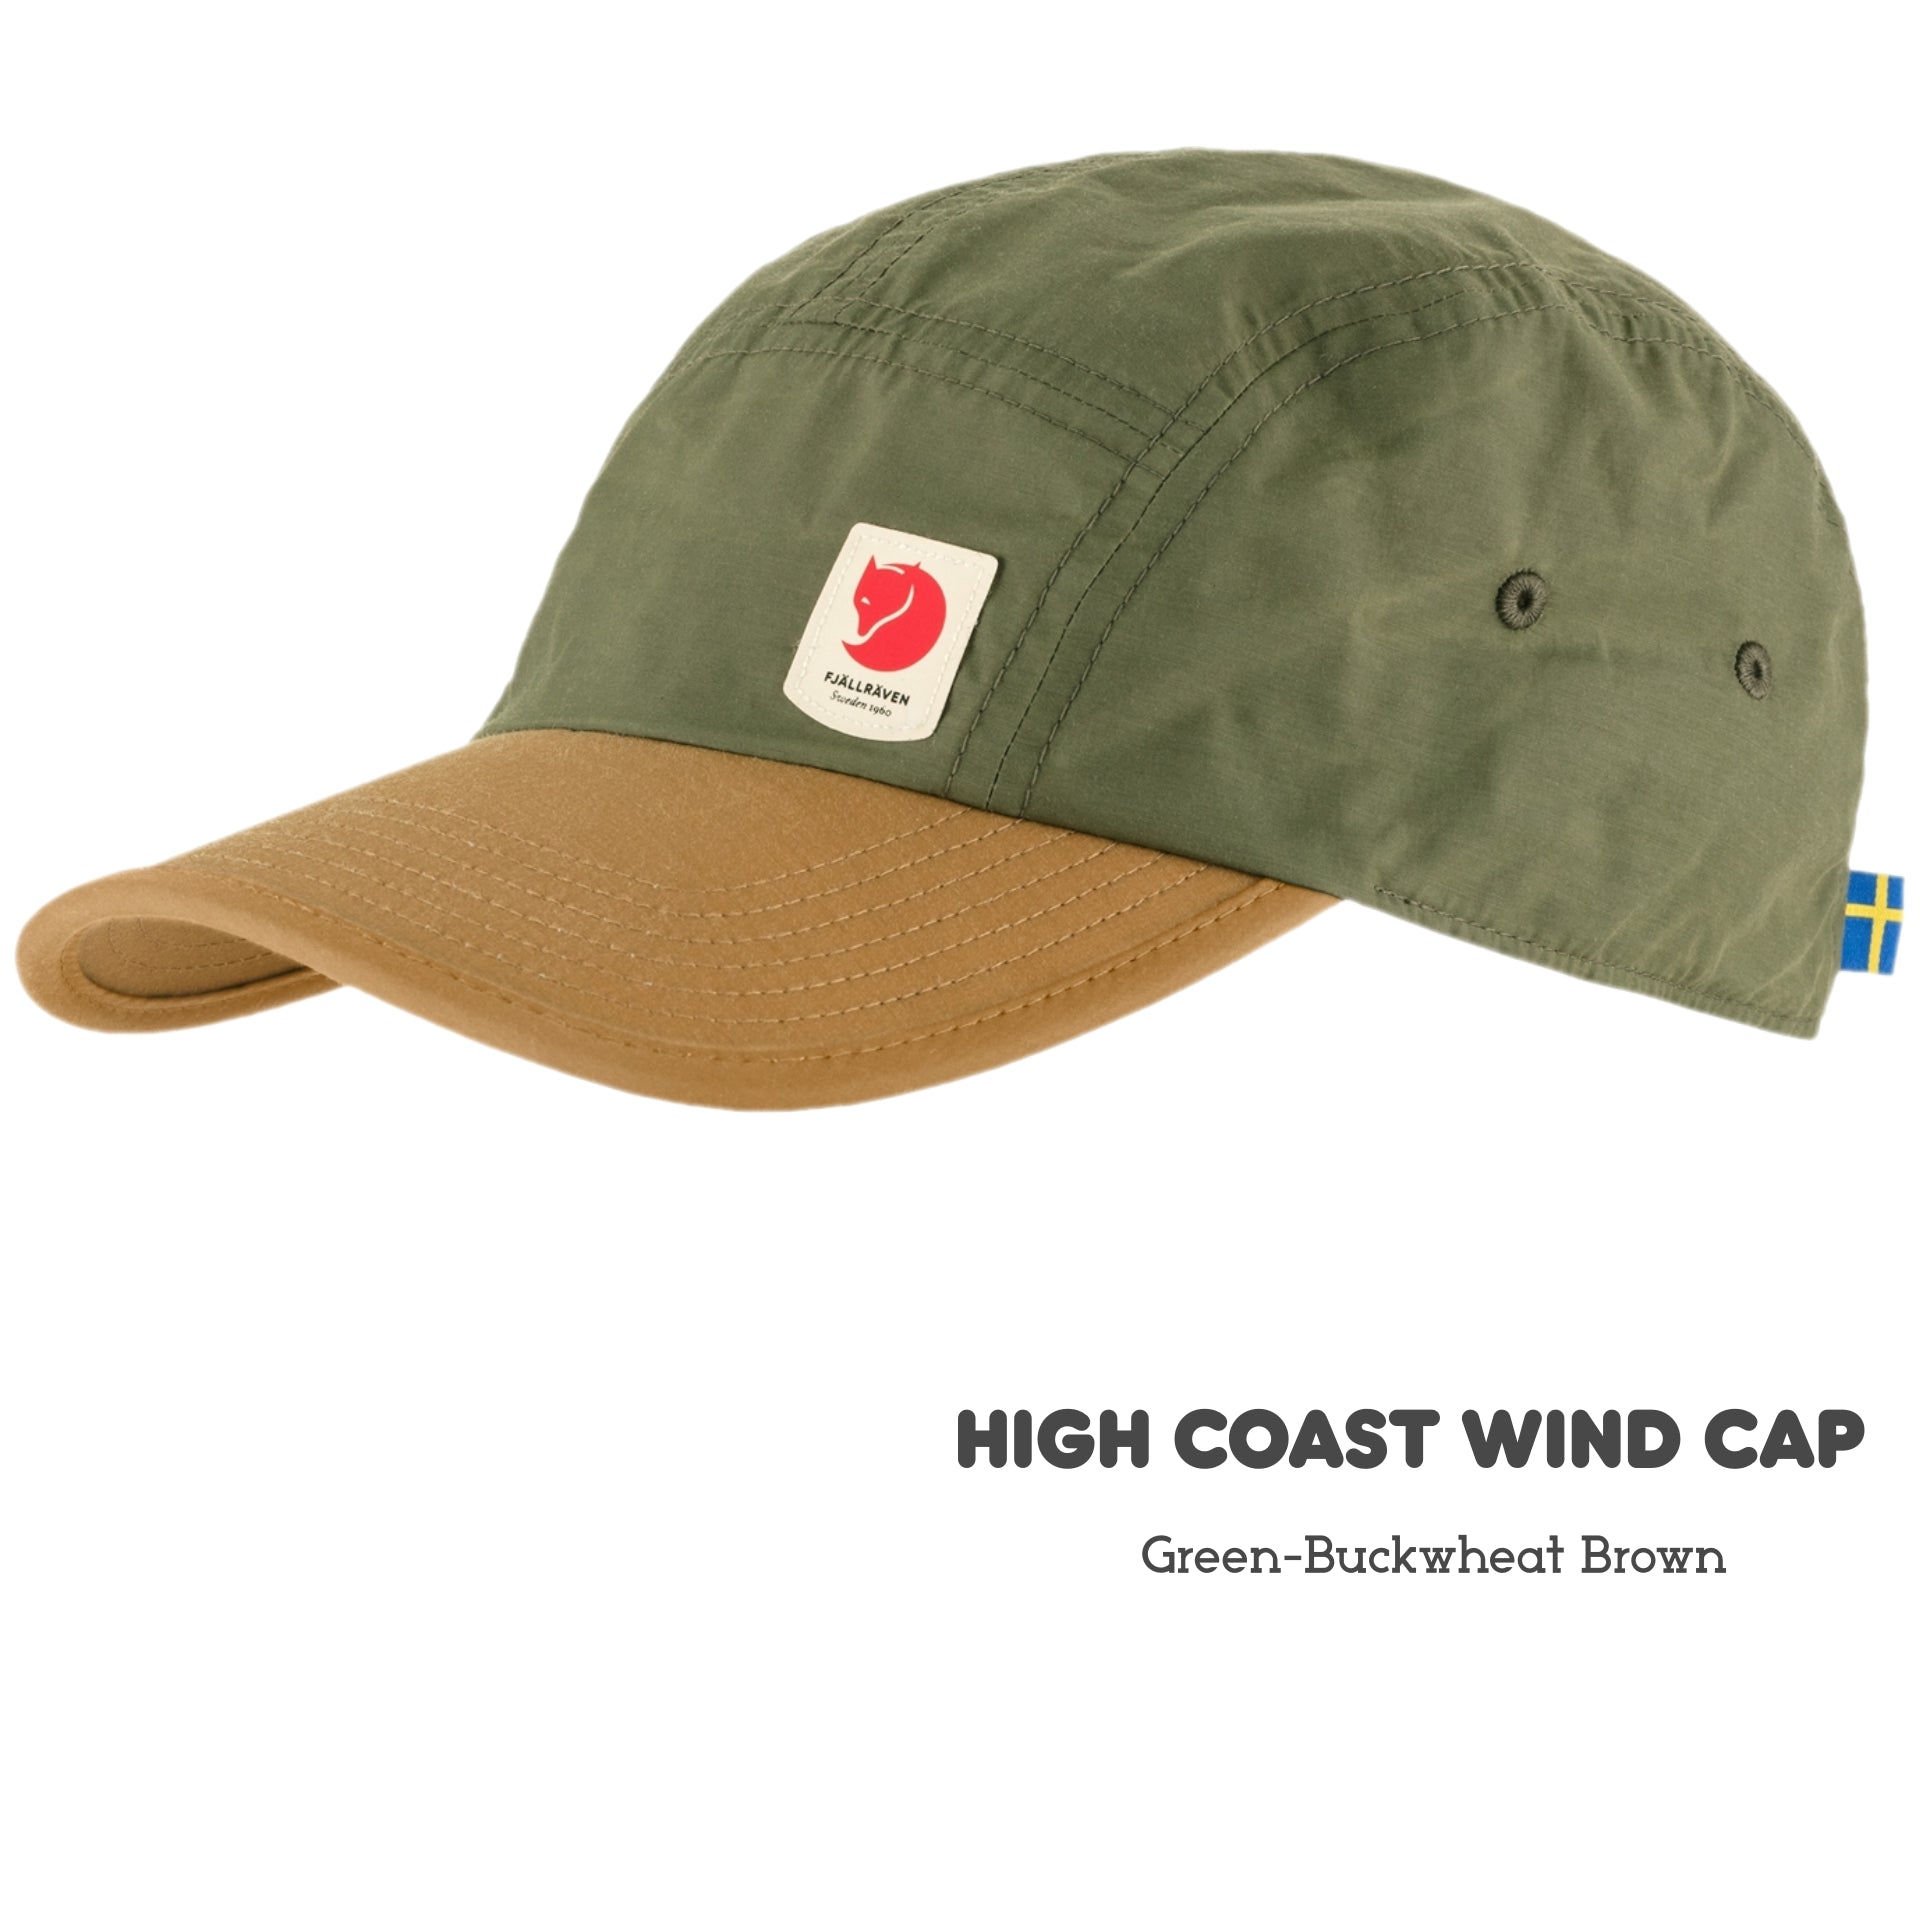 High Coast Wind Cap